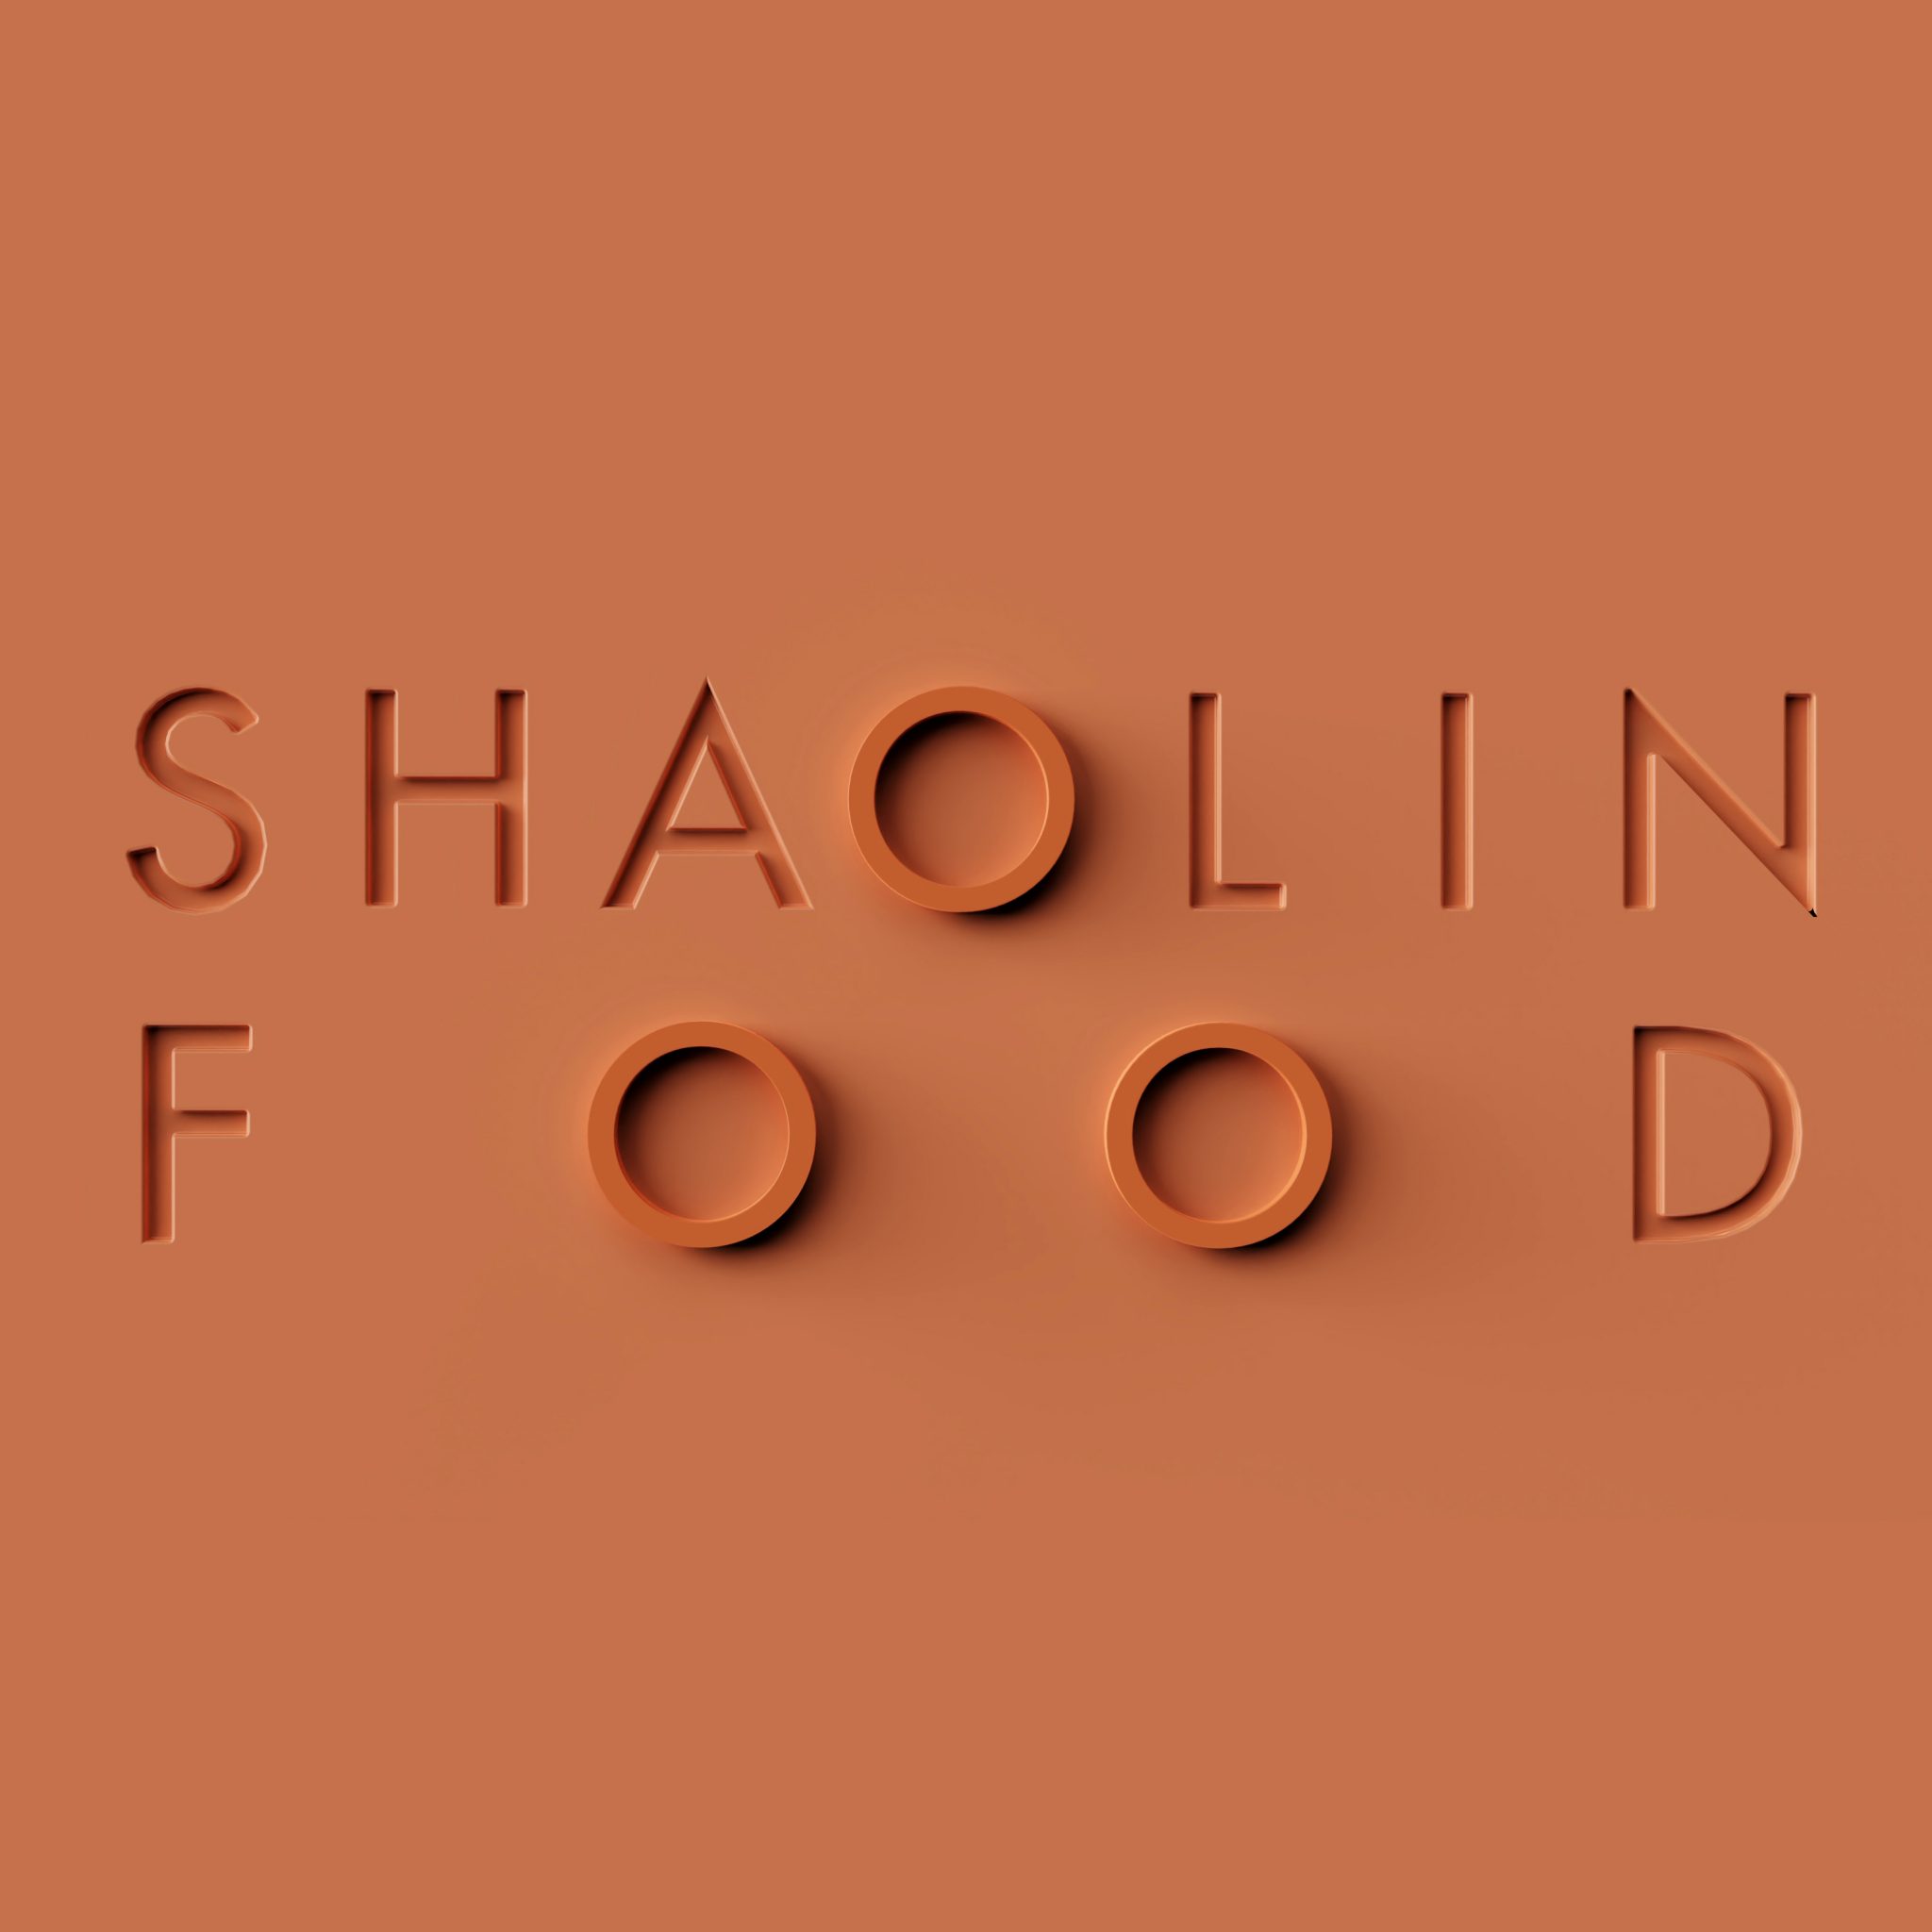 少林食品 SHAOLIN FOOD